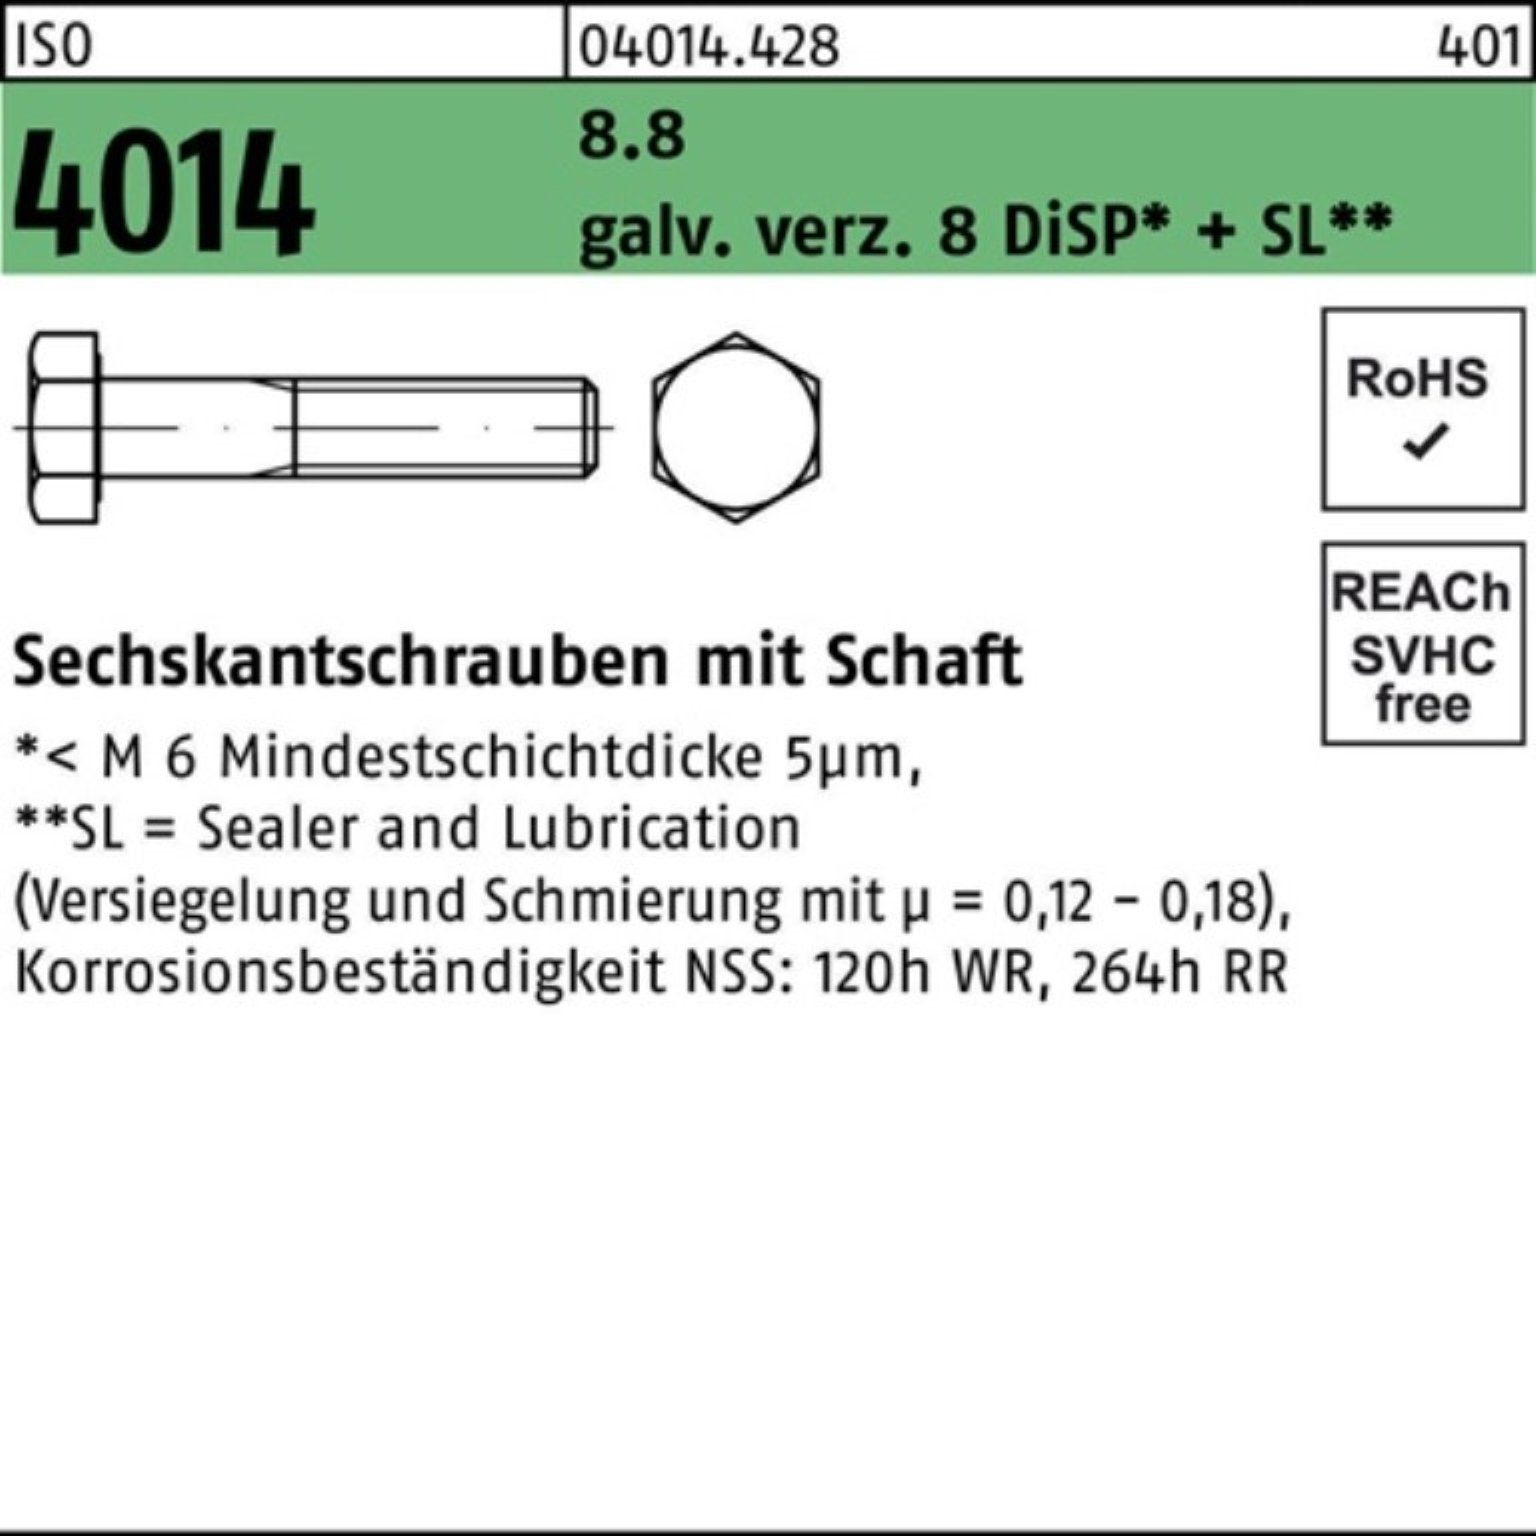 galv.verz. Bufab ISO 4014 Pack 8 Sechskantschraube Schaft 100er M20x280 Sechskantschraube 8.8